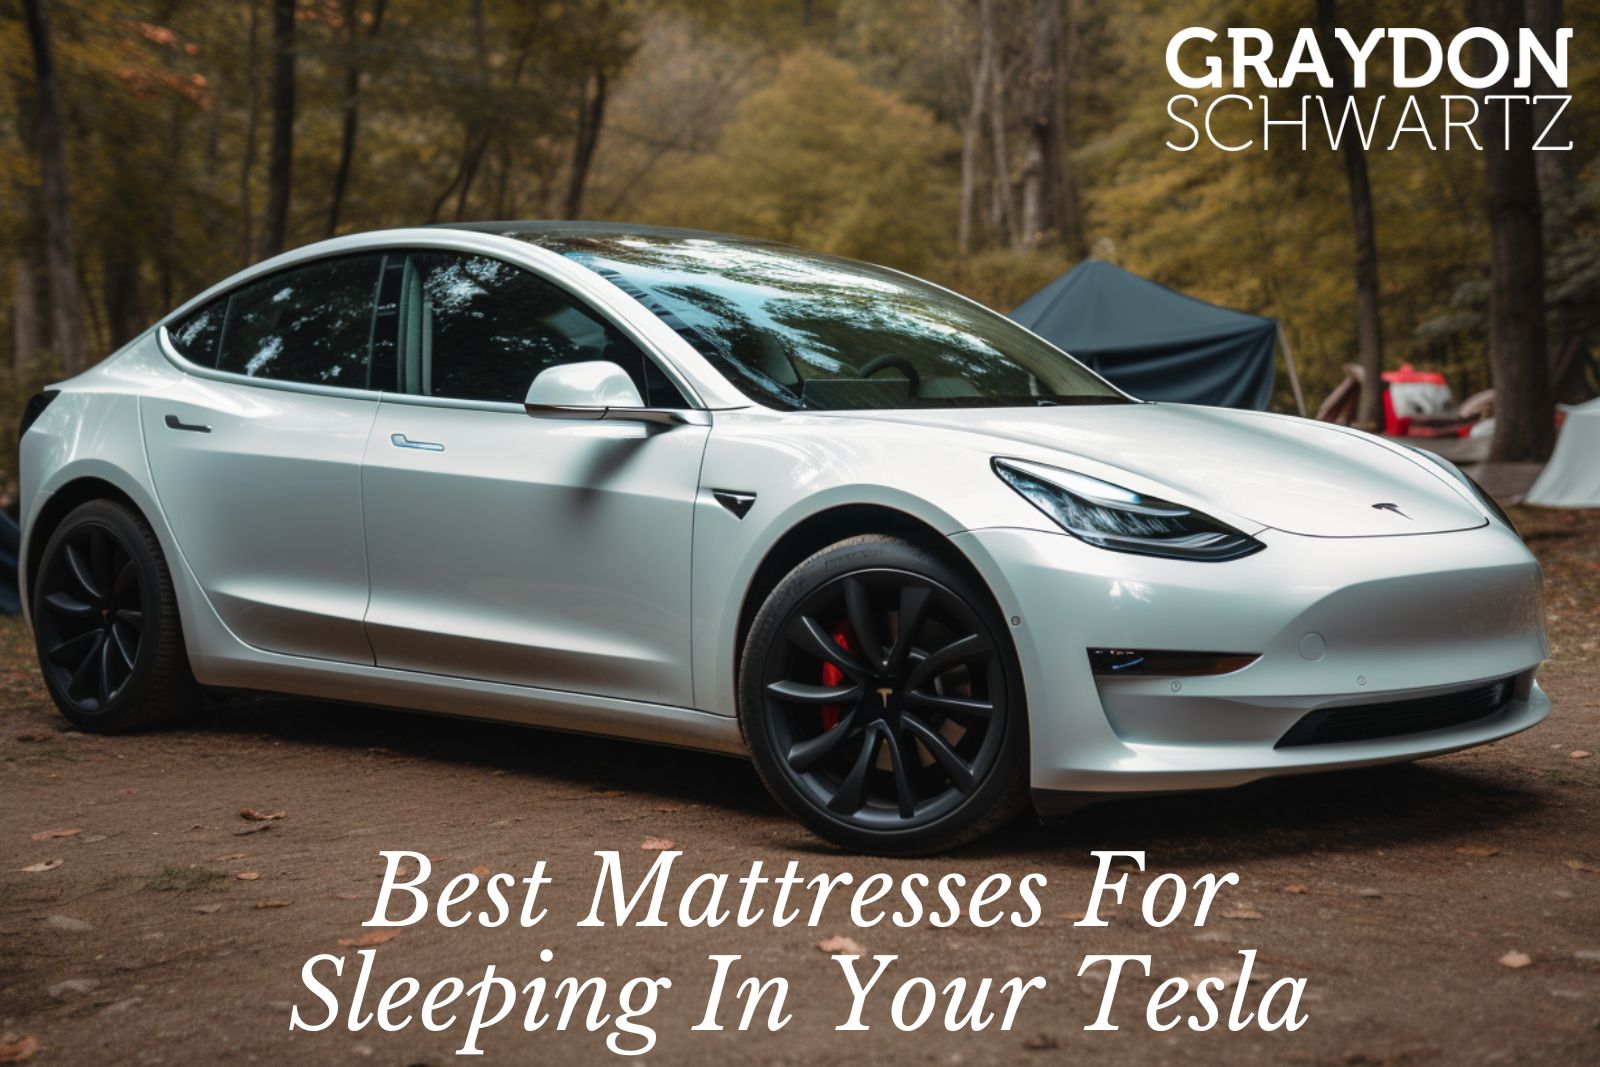 Dreamcase vs TESMAT - Quel matelas est le meilleur pour les Tesla Model 3 et Model Y ?